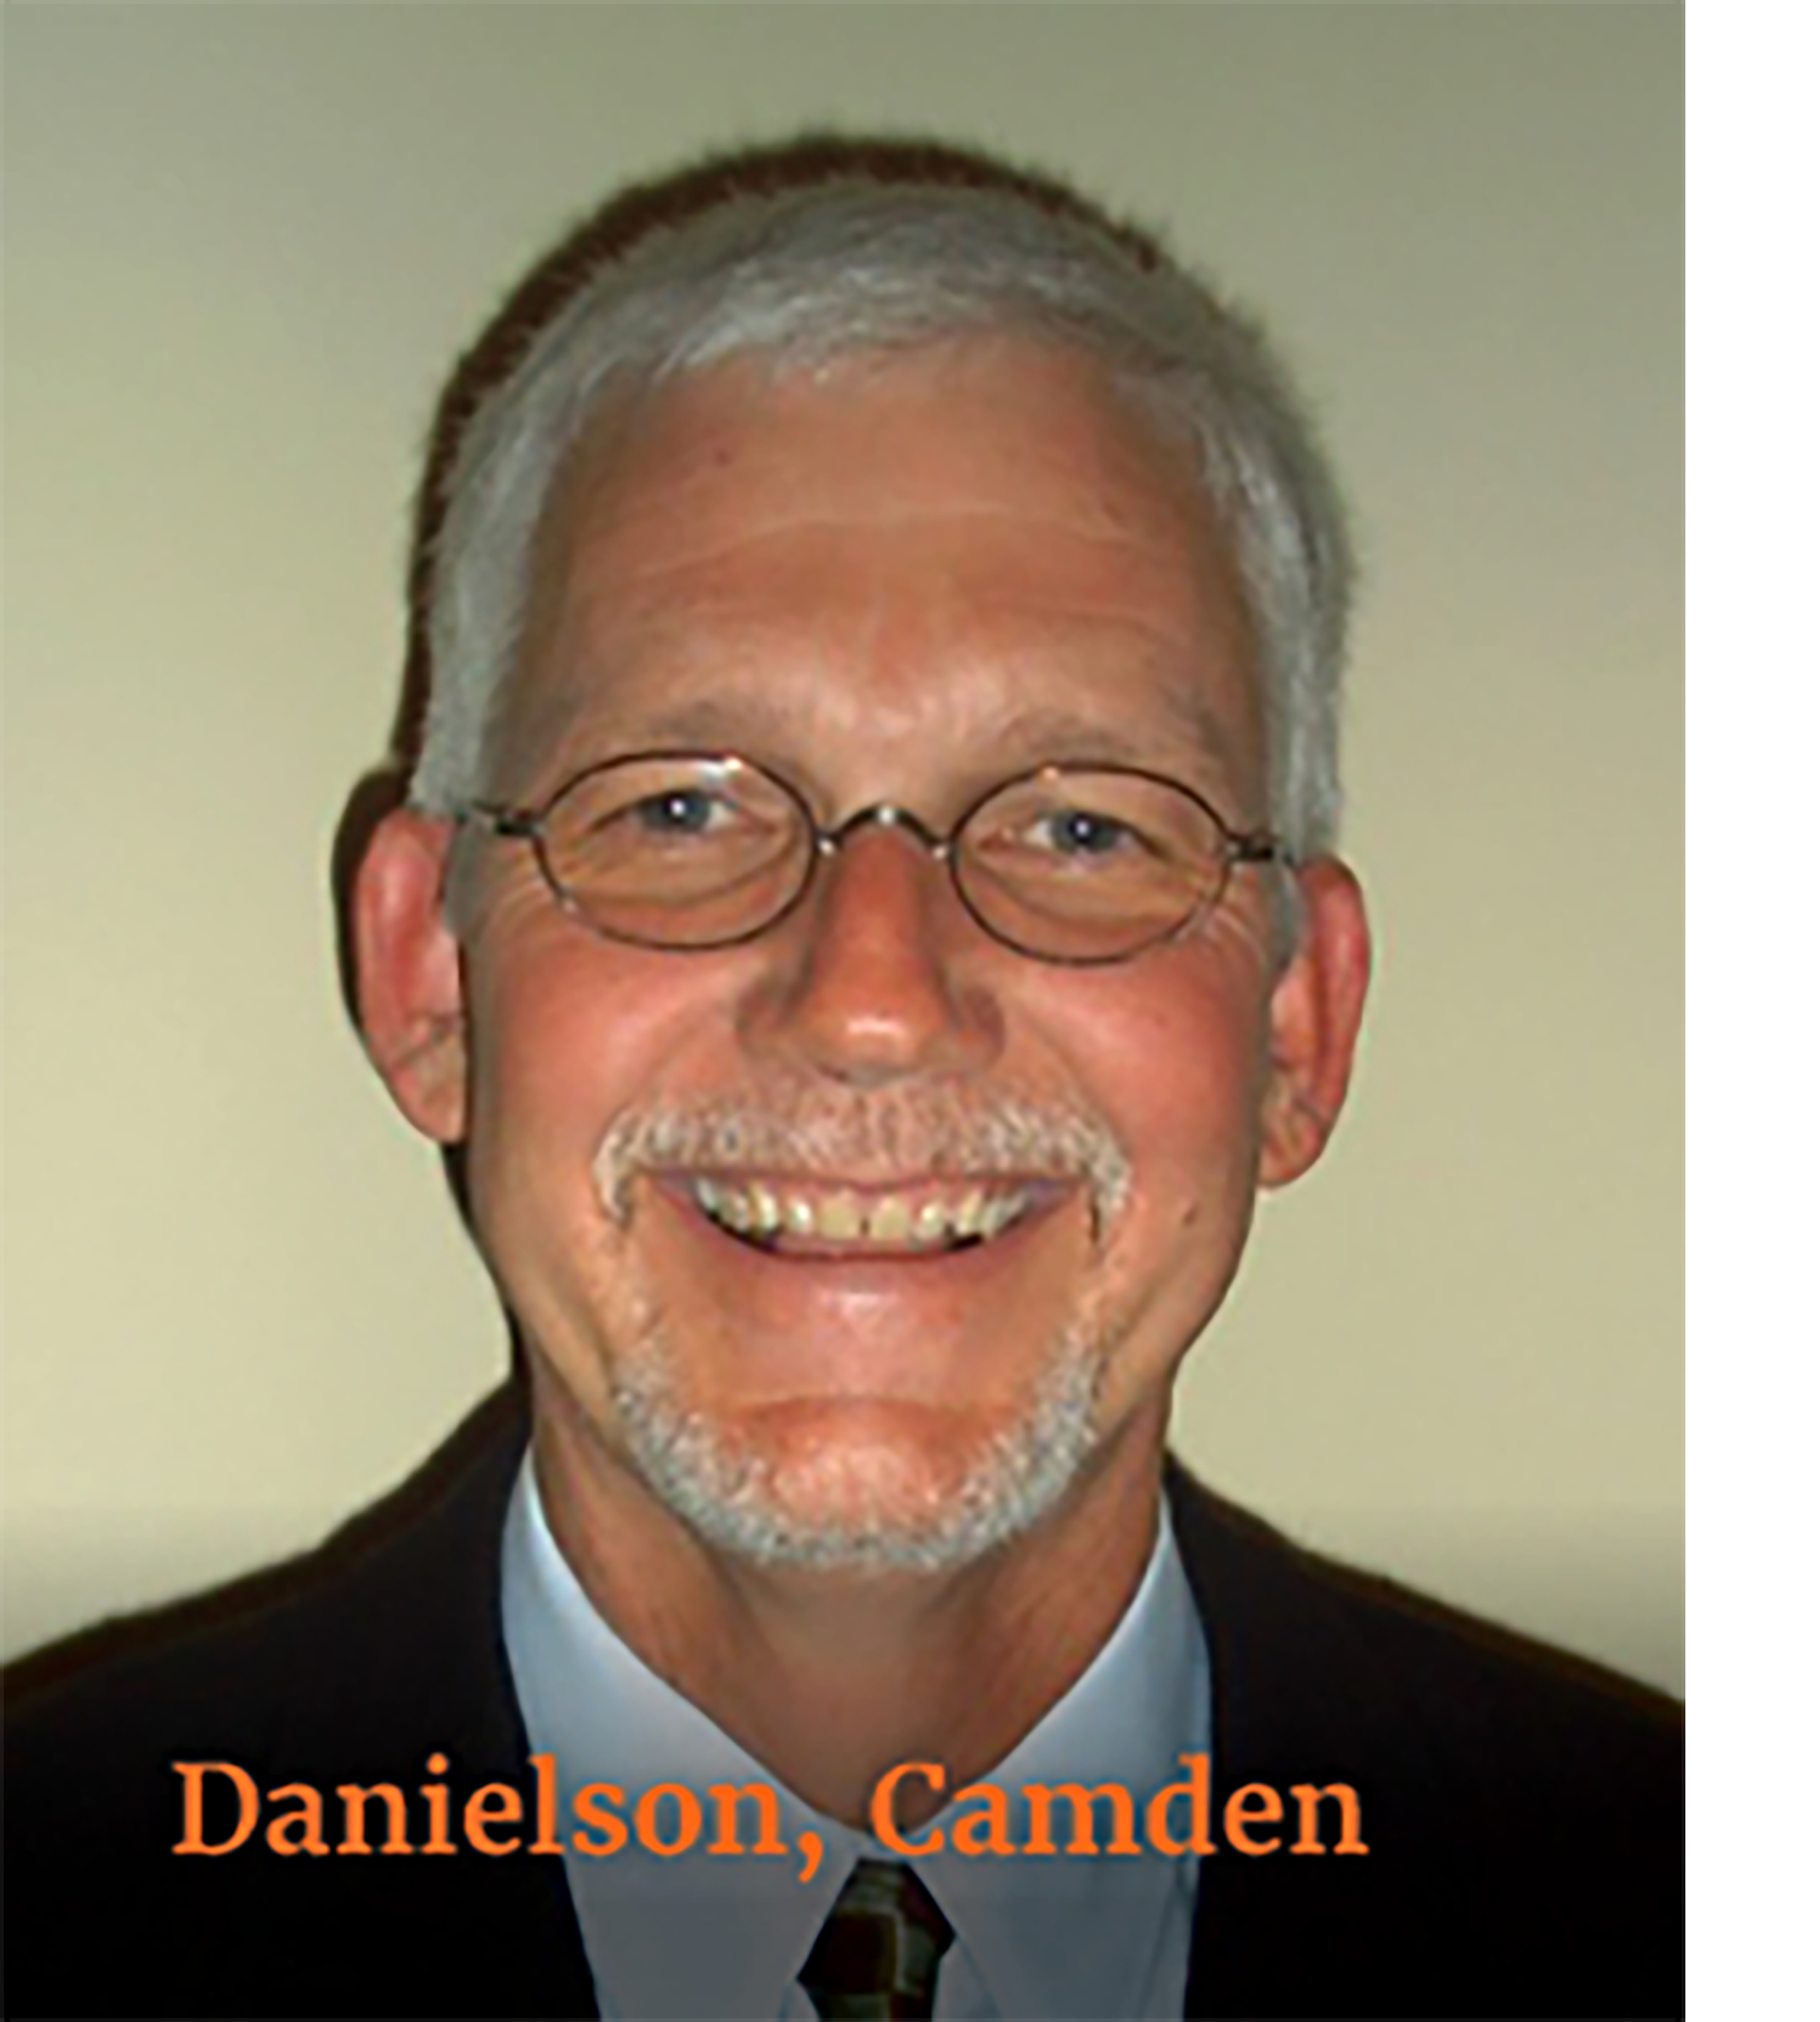 Danielson Camden